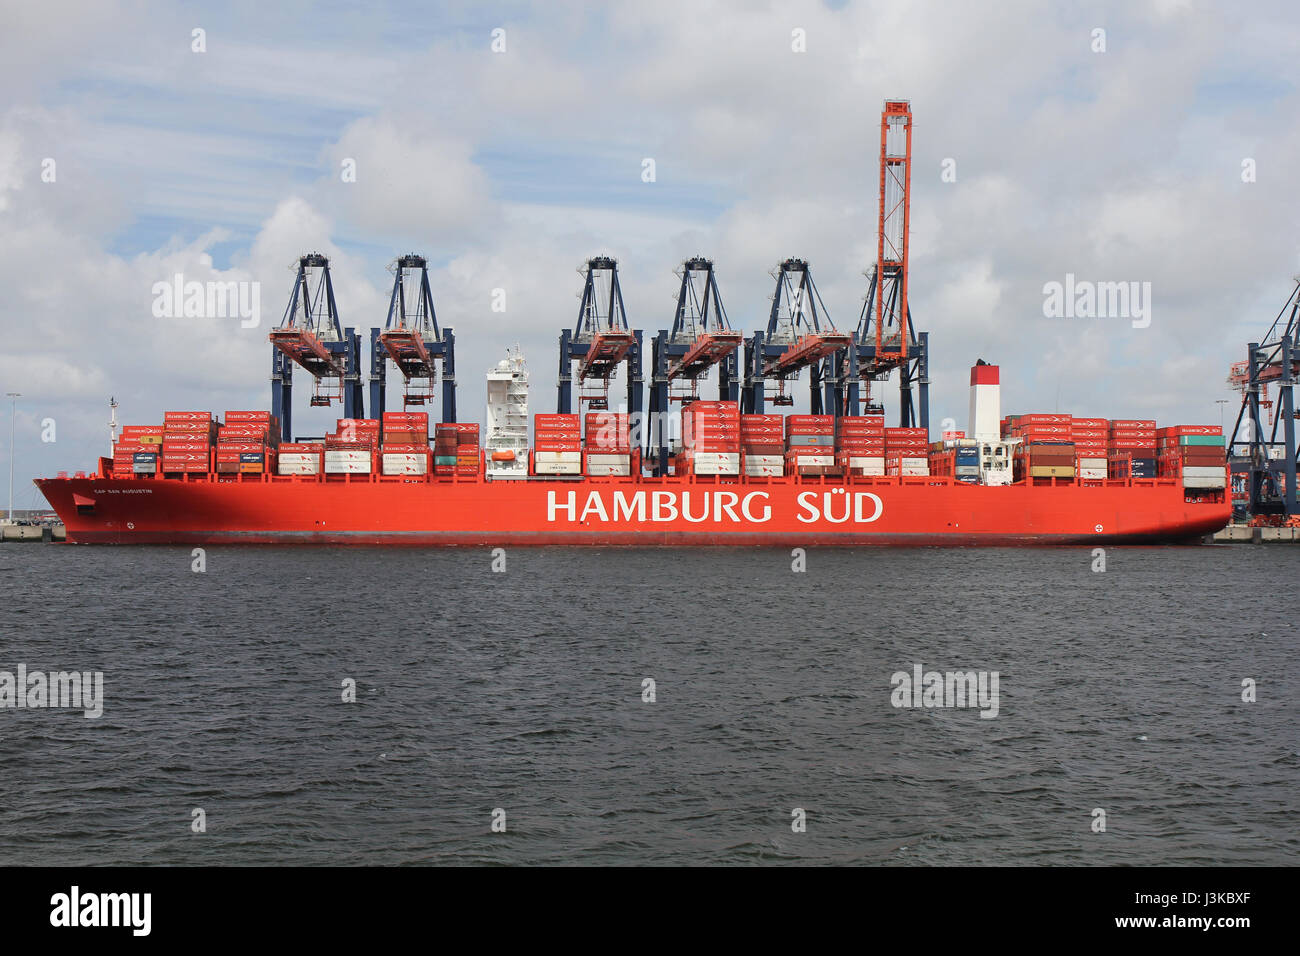 CAP SAN AUGUSTIN-Container-Schiff mit einer Kapazität von 9.600 TEU vertäut am Euromax Terminal in Rotterdam / Maasvlakte Stockfoto